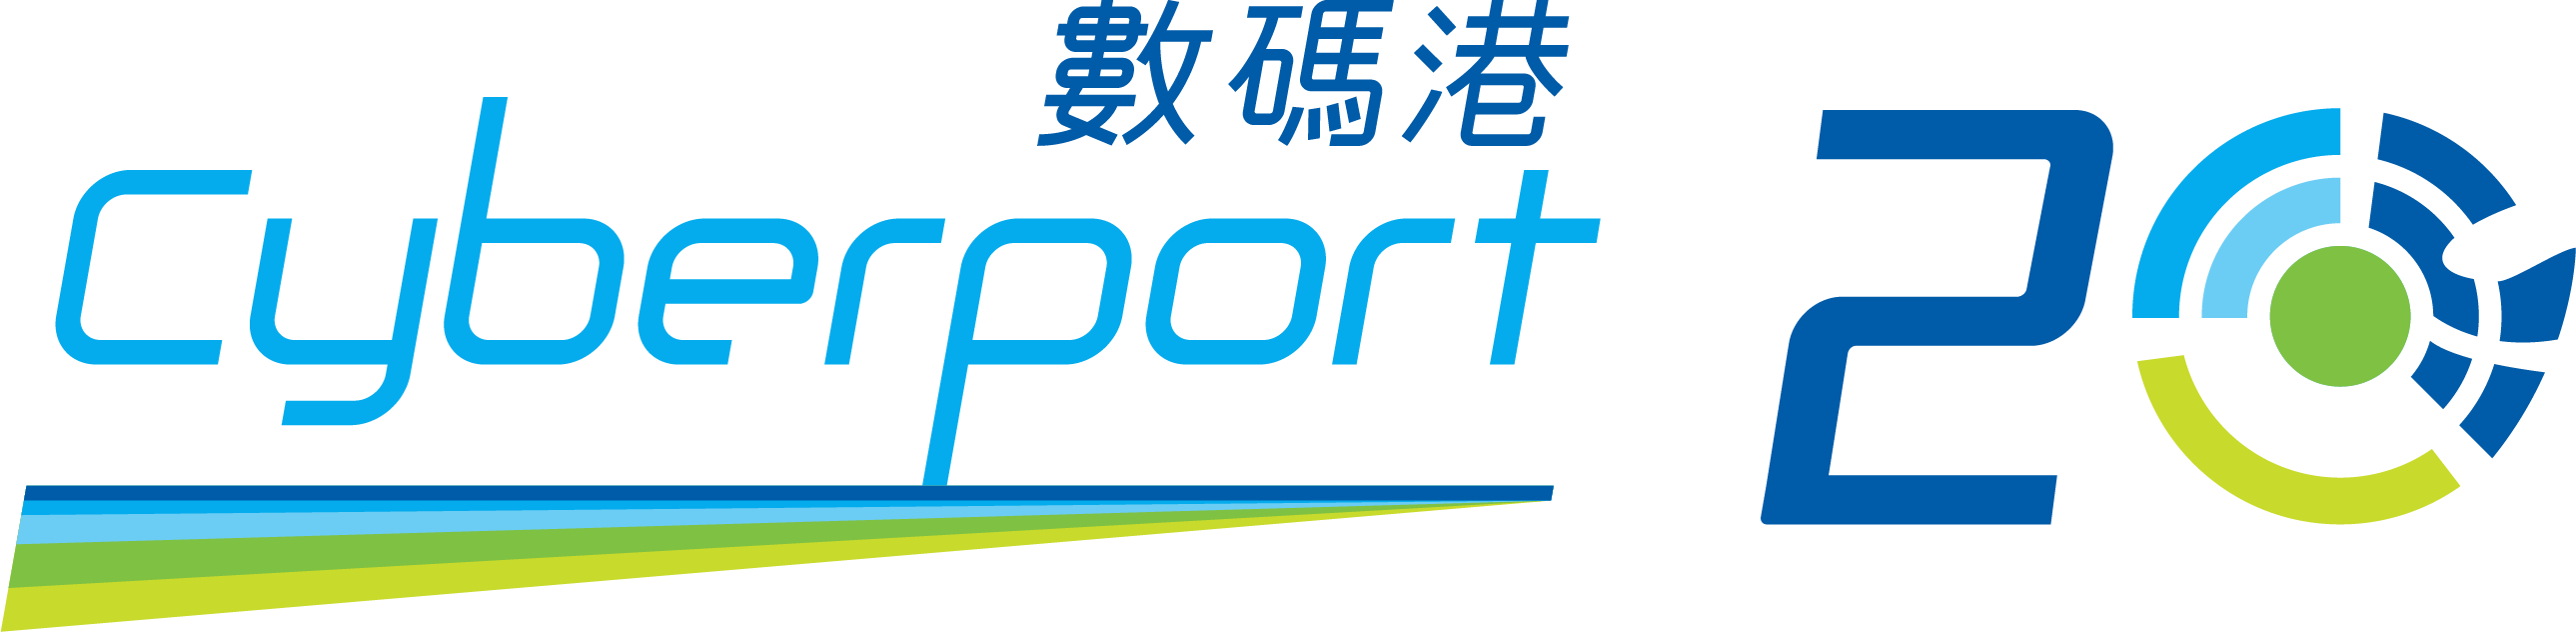 Cyberport Venture Capital Forum